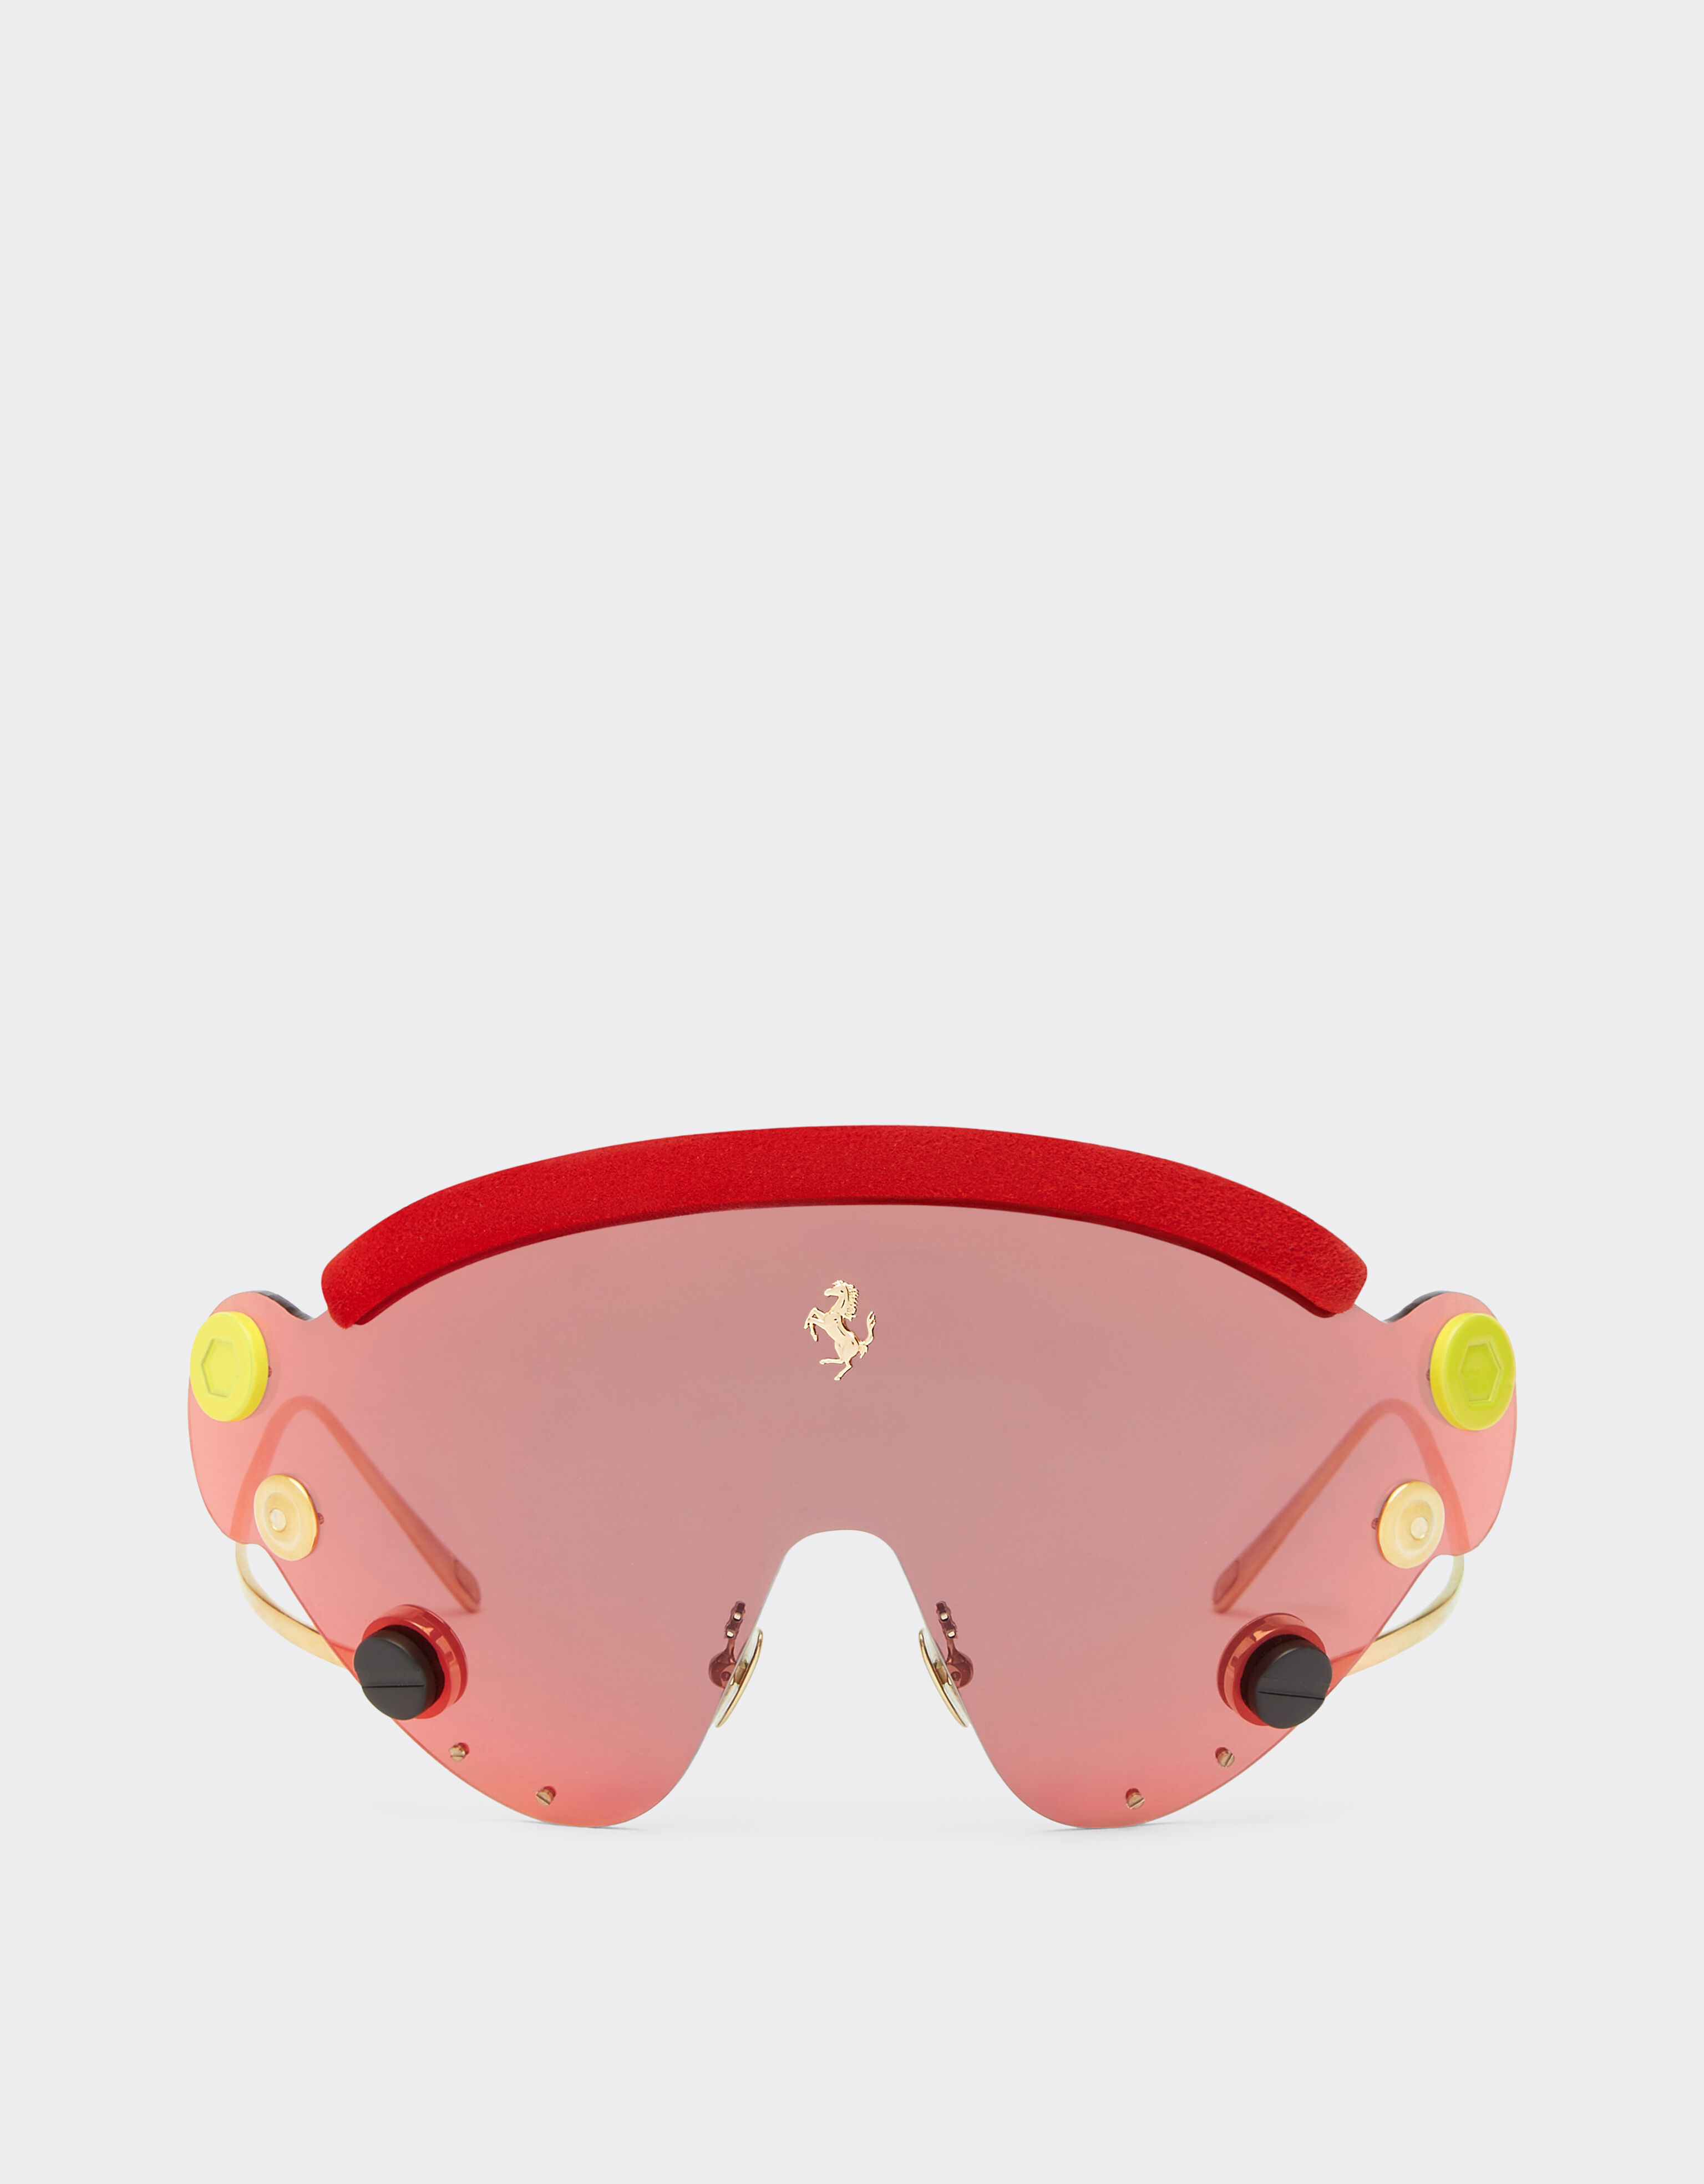 Ferrari Occhiale da sole Limited Edition Ferrari in metallo rosso e dorato con mascherina rossa specchiata Rosso F1243f